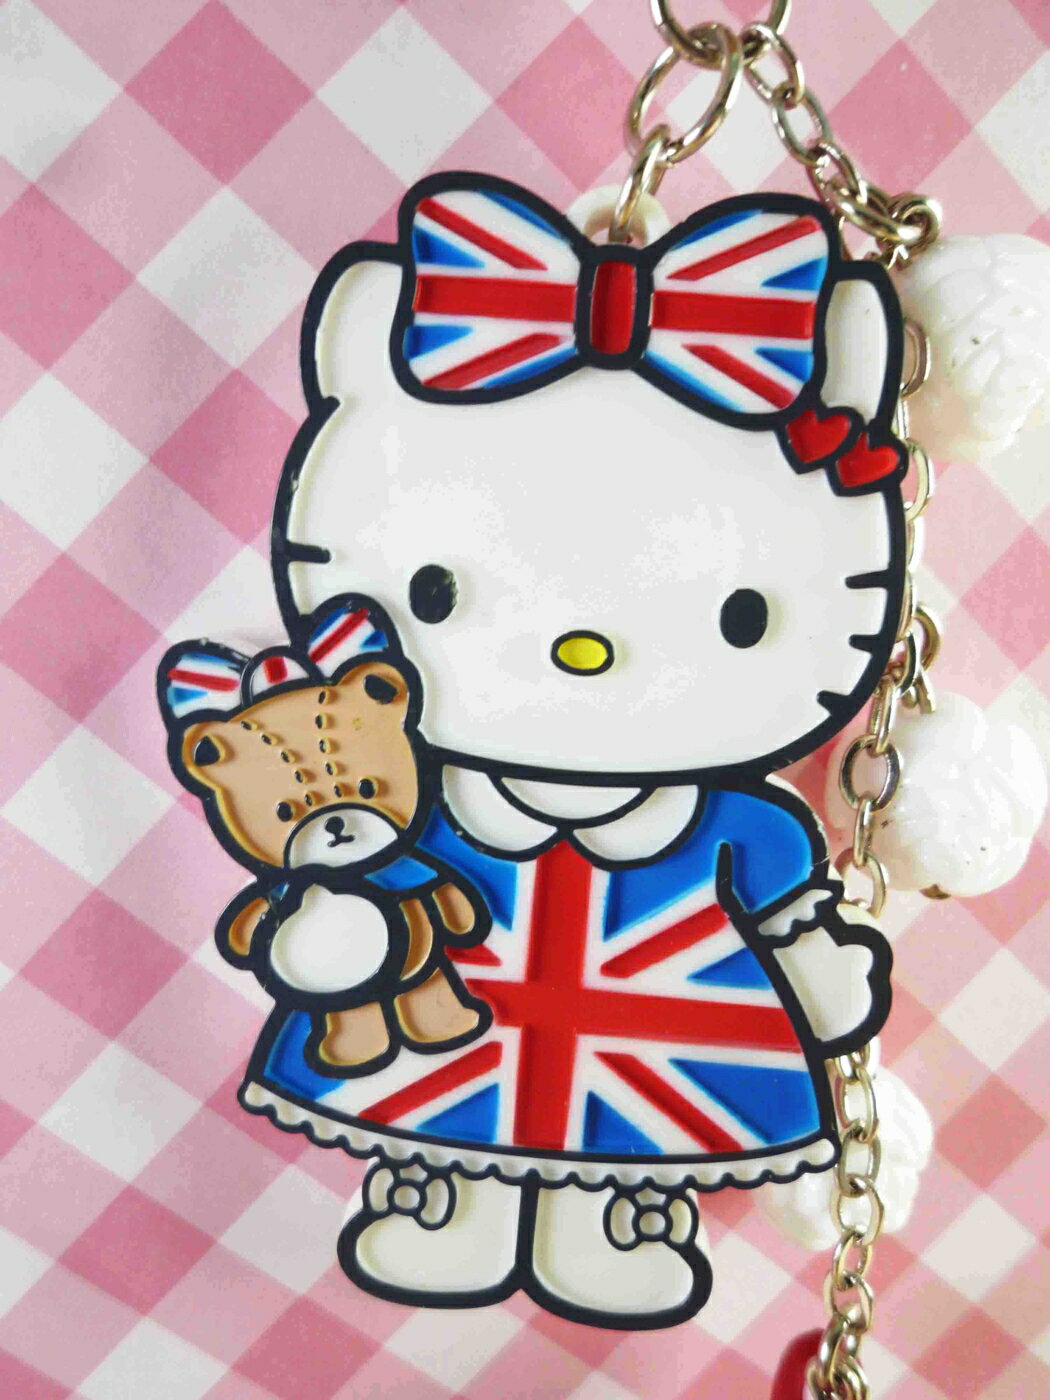 【震撼精品百貨】Hello Kitty 凱蒂貓 限定版手機吊飾-英國 震撼日式精品百貨